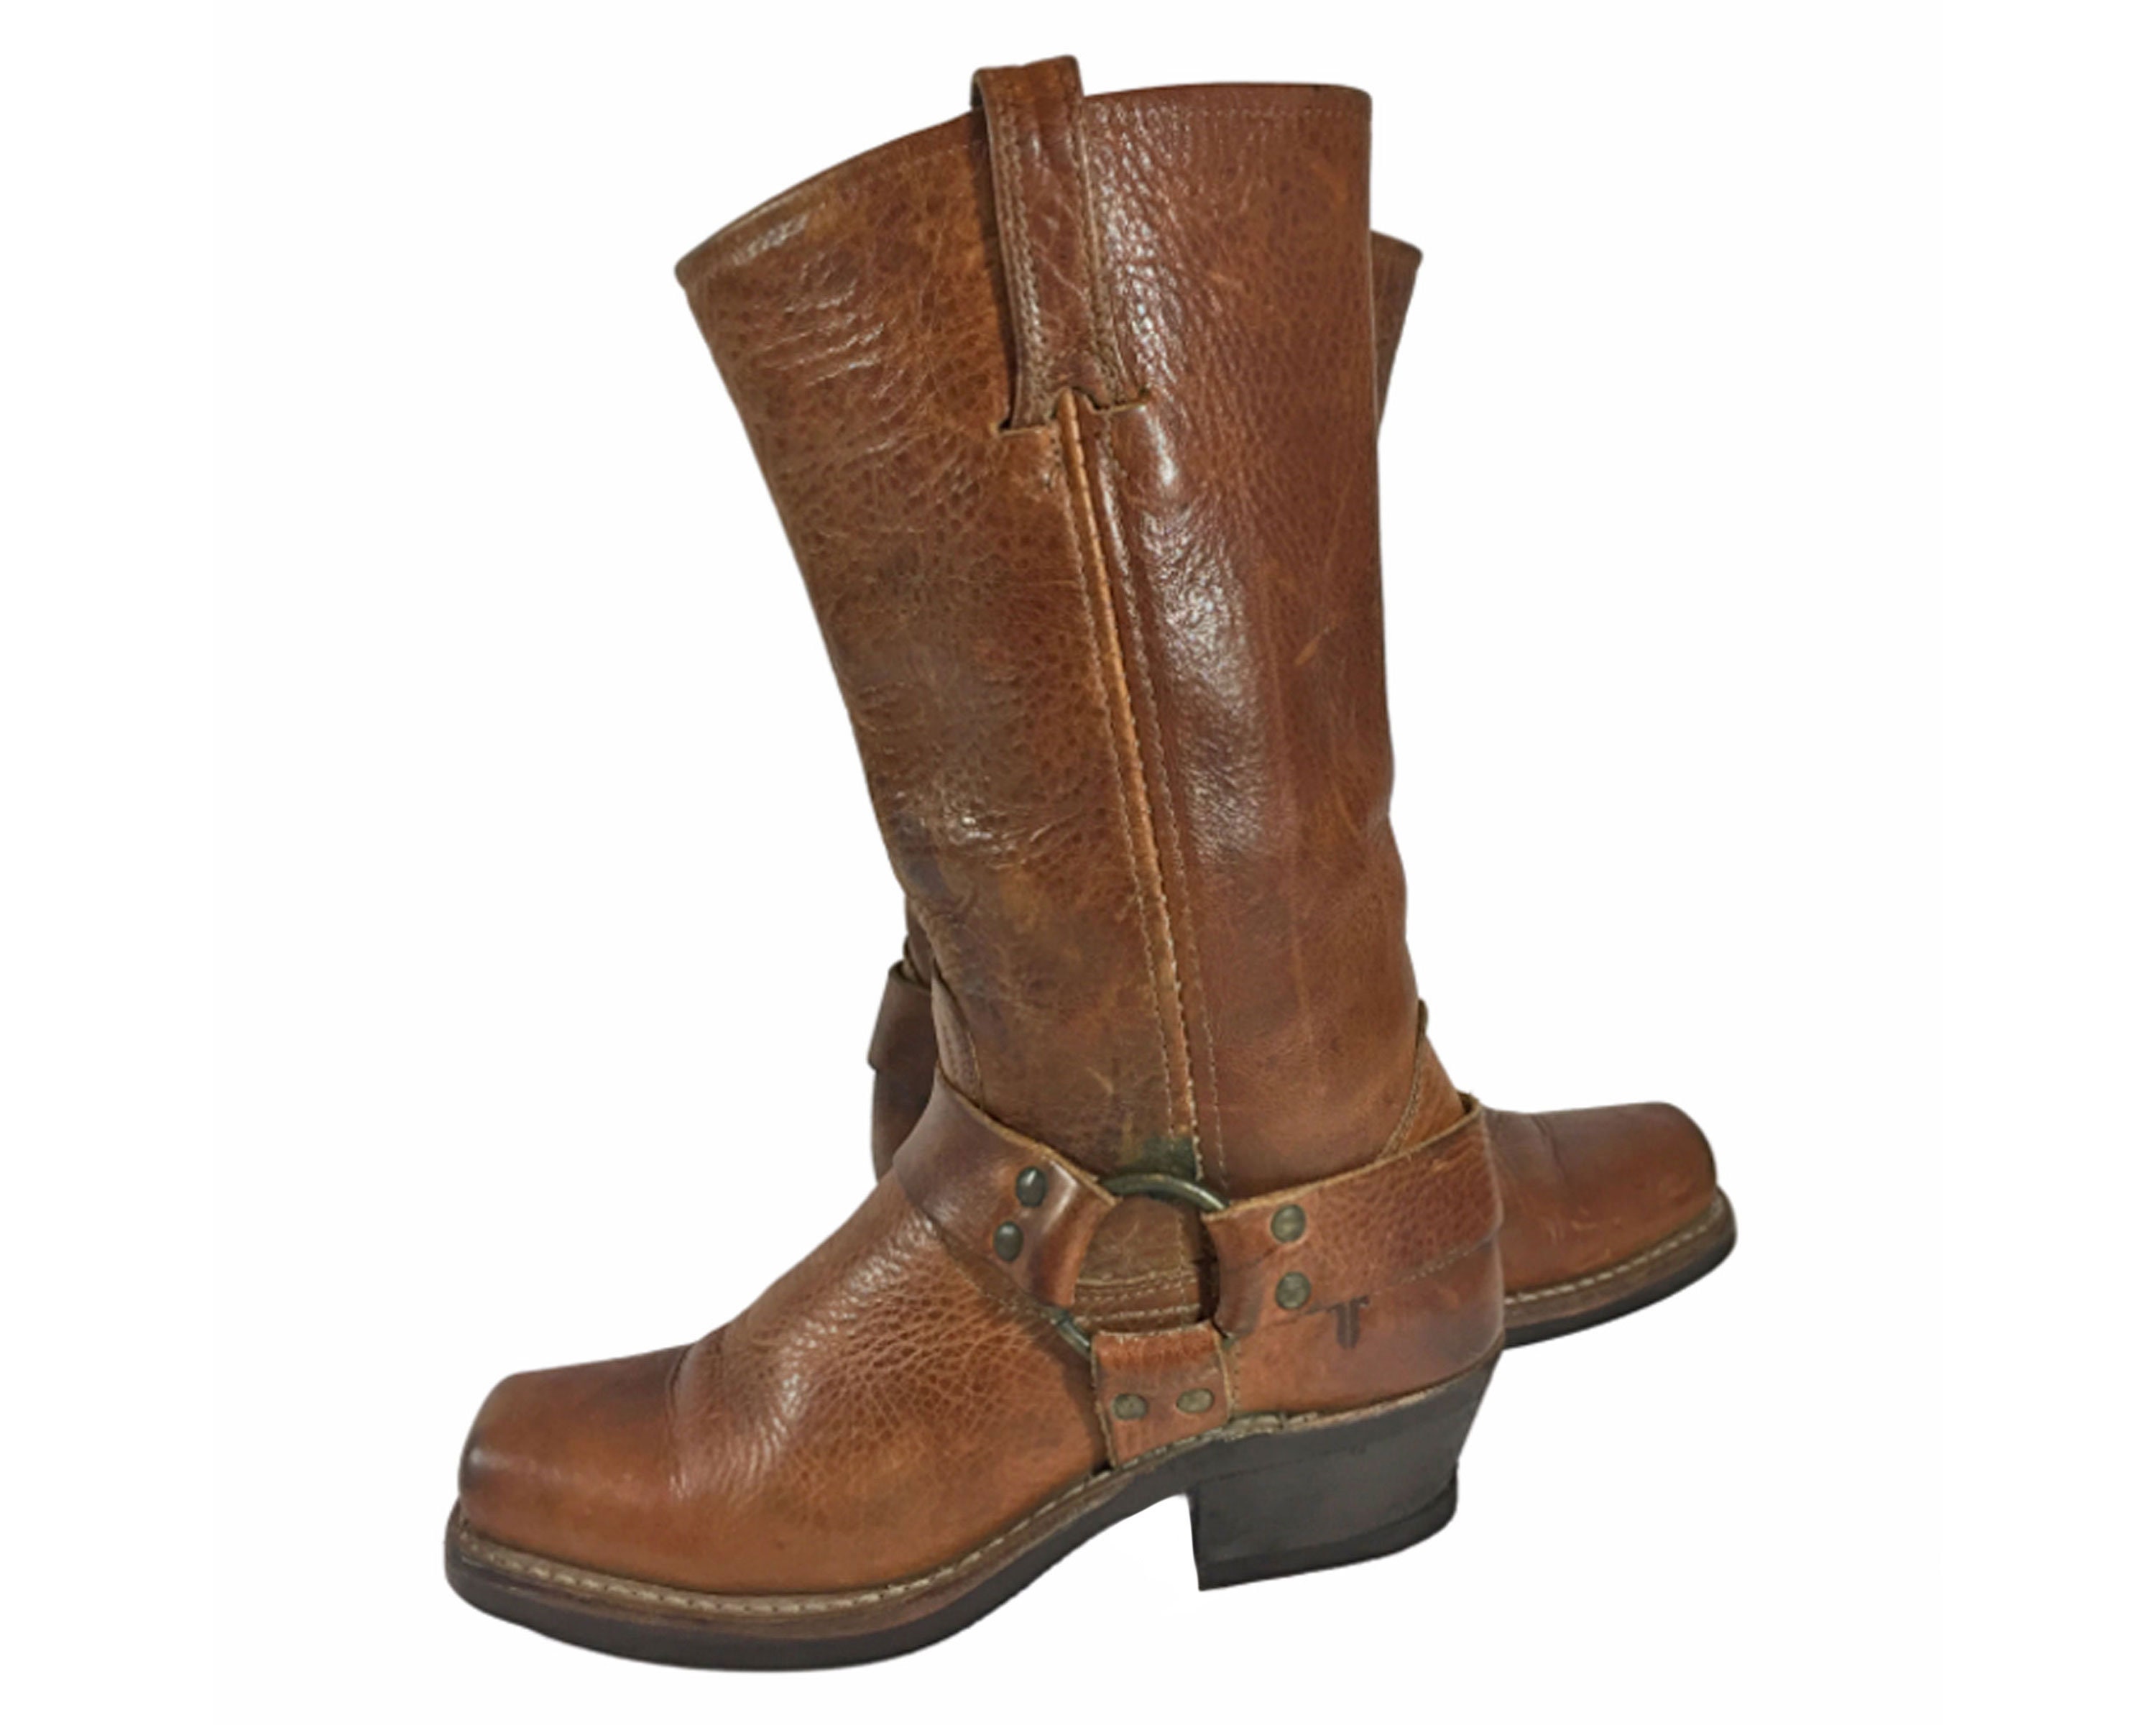 Jack Jones Delaney Leather Boot - Calzado Informal Para Hombre